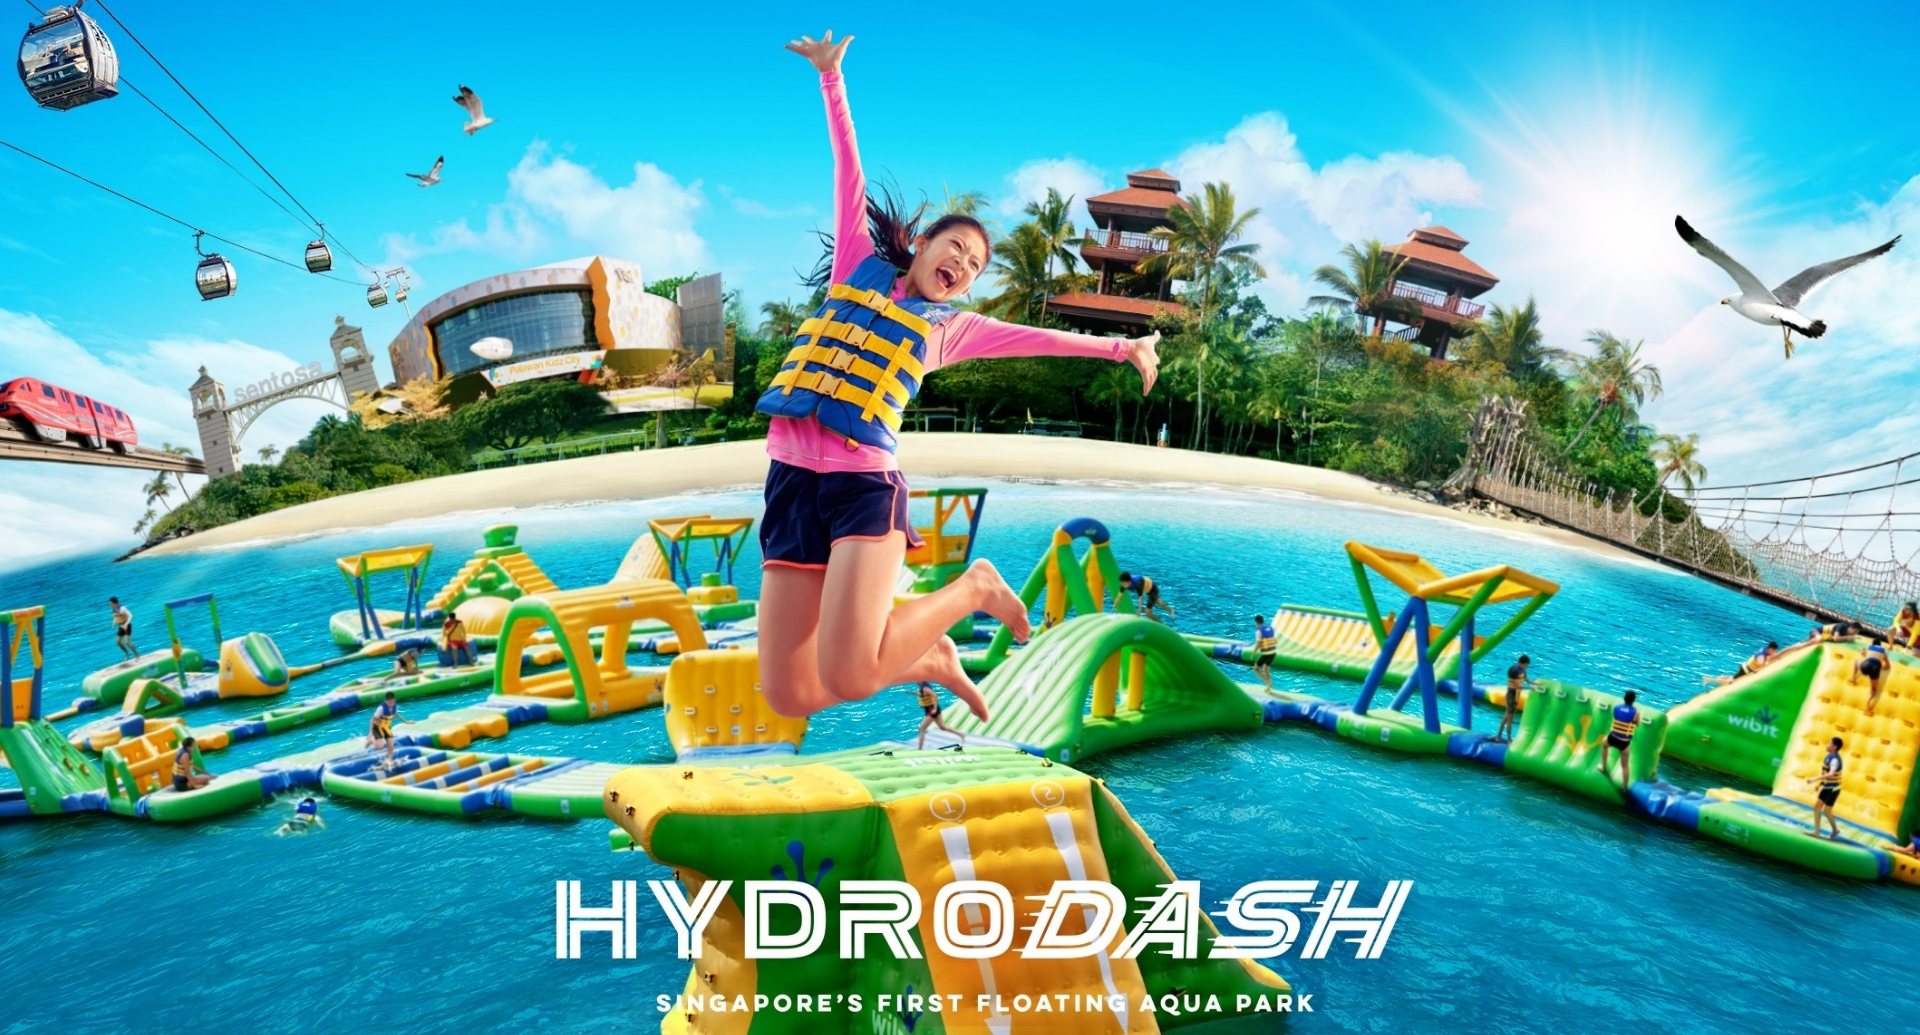 HydroDash